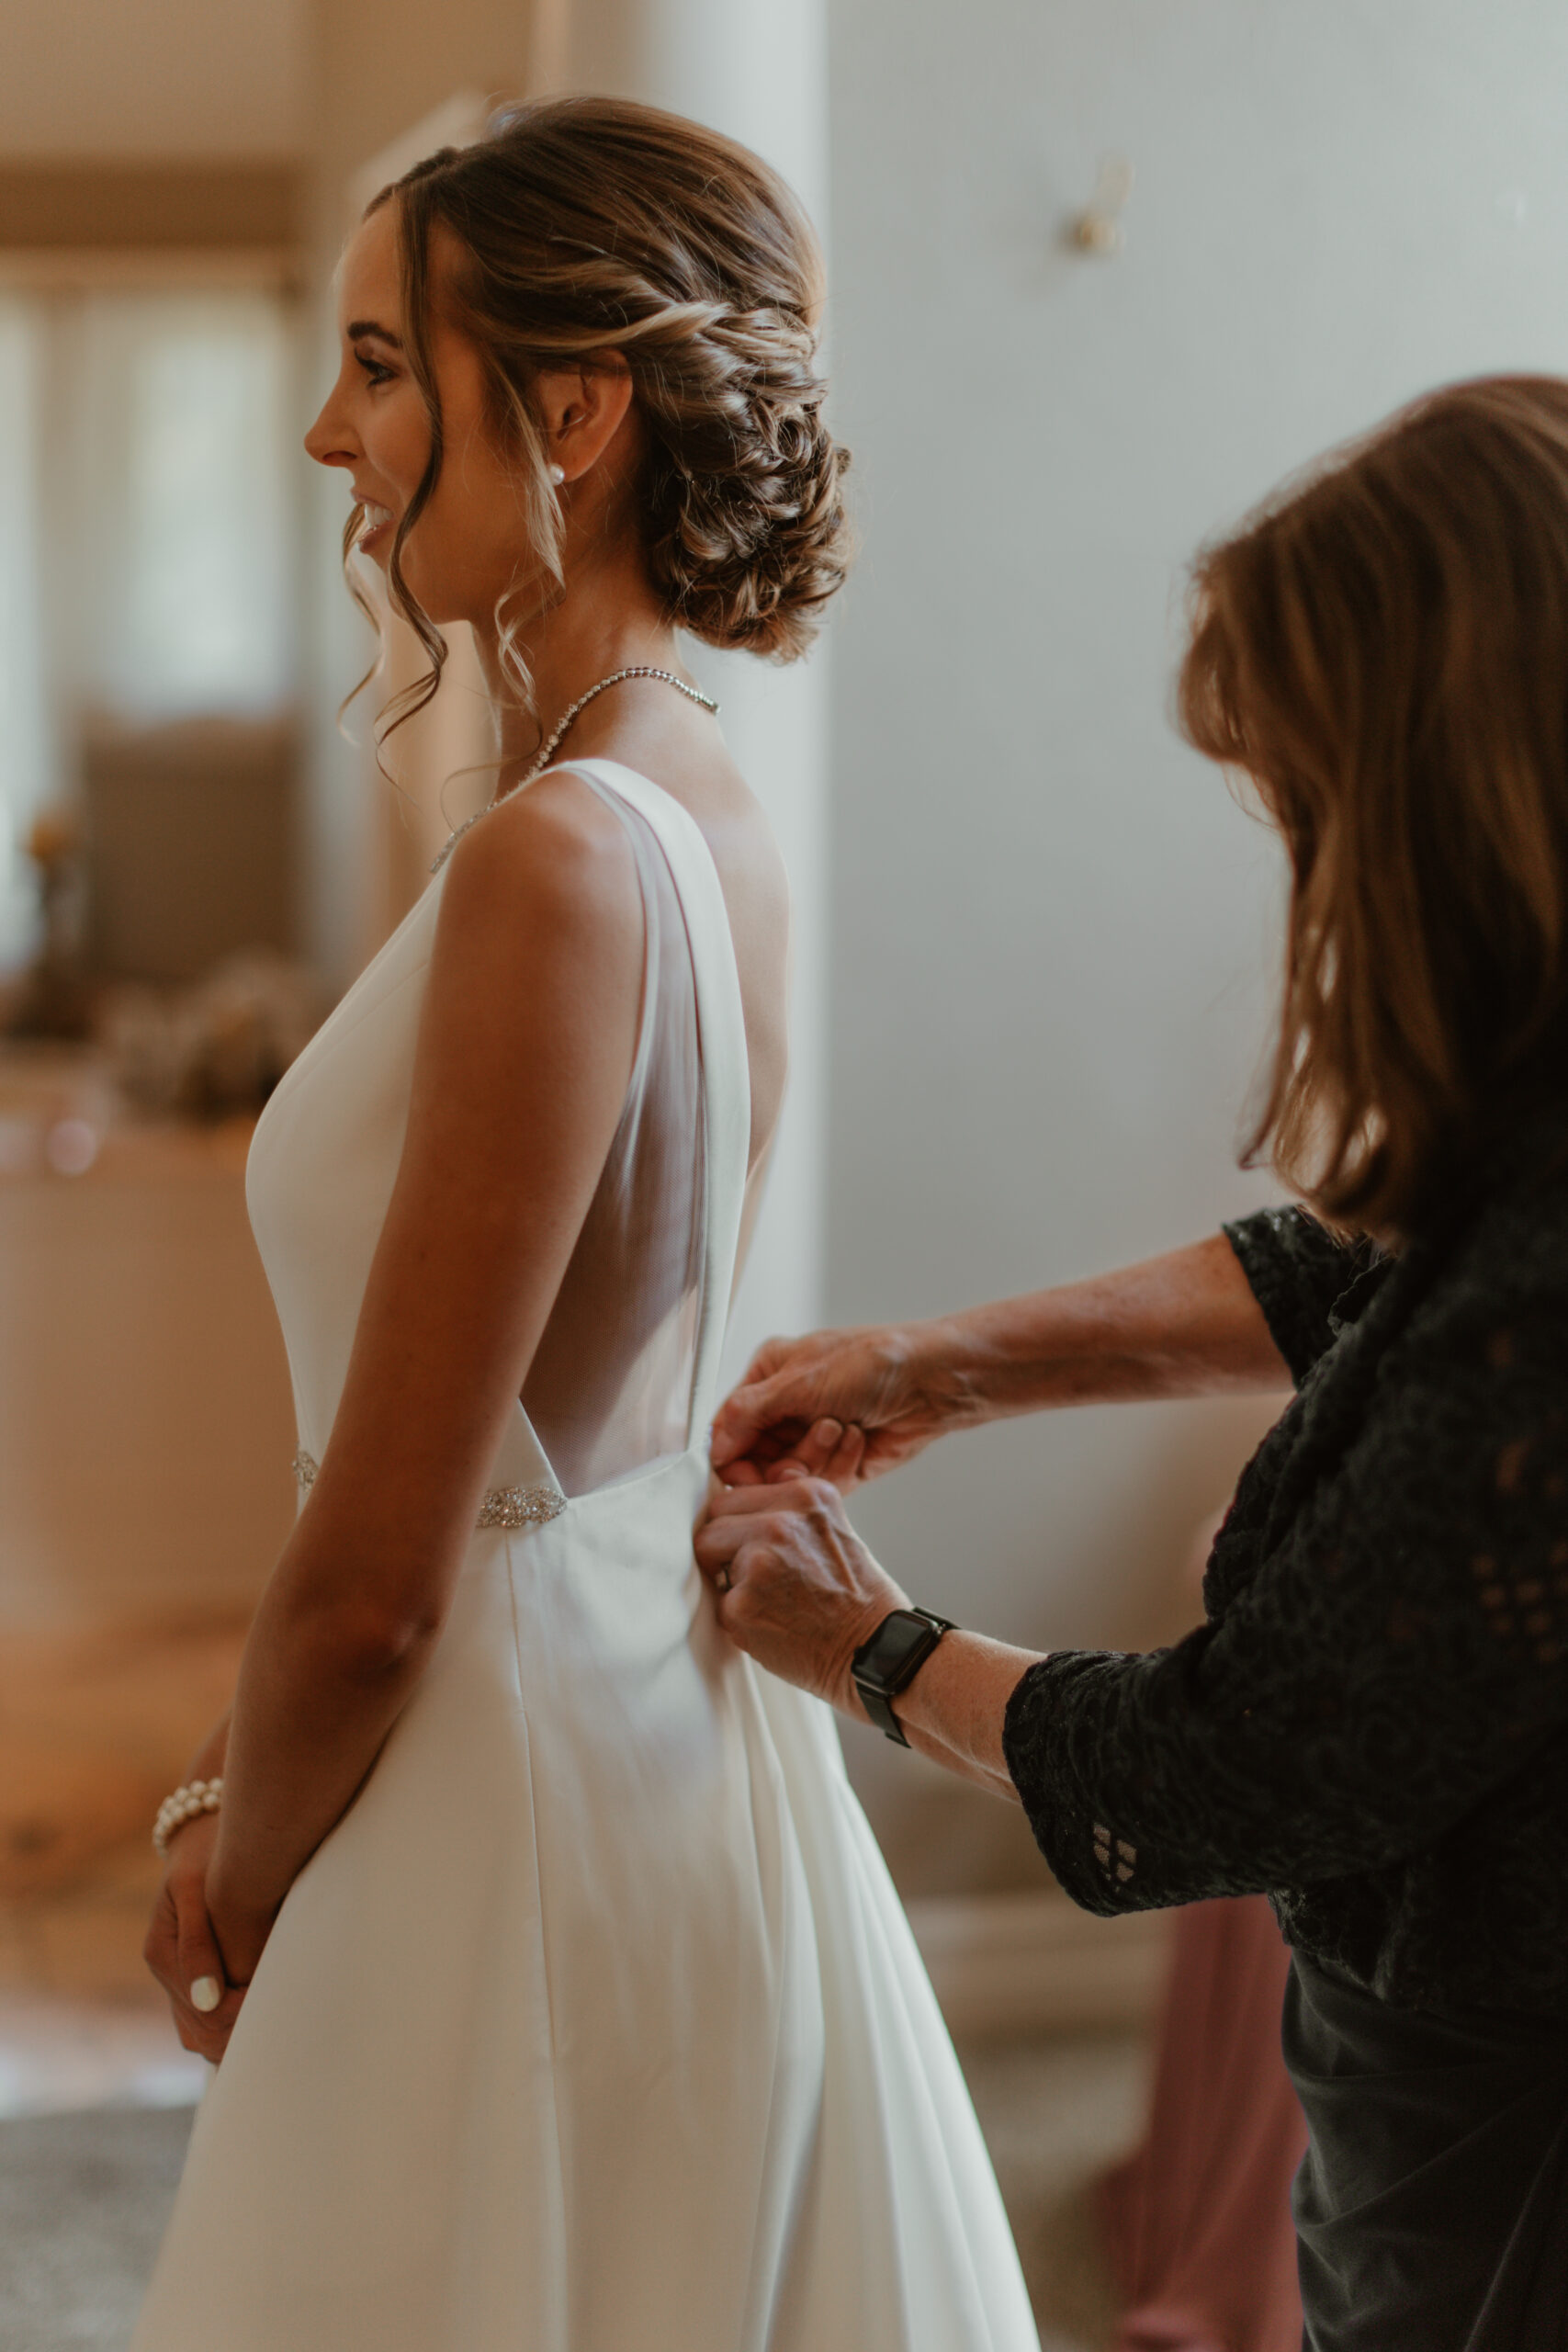 mother zipping up brides dress